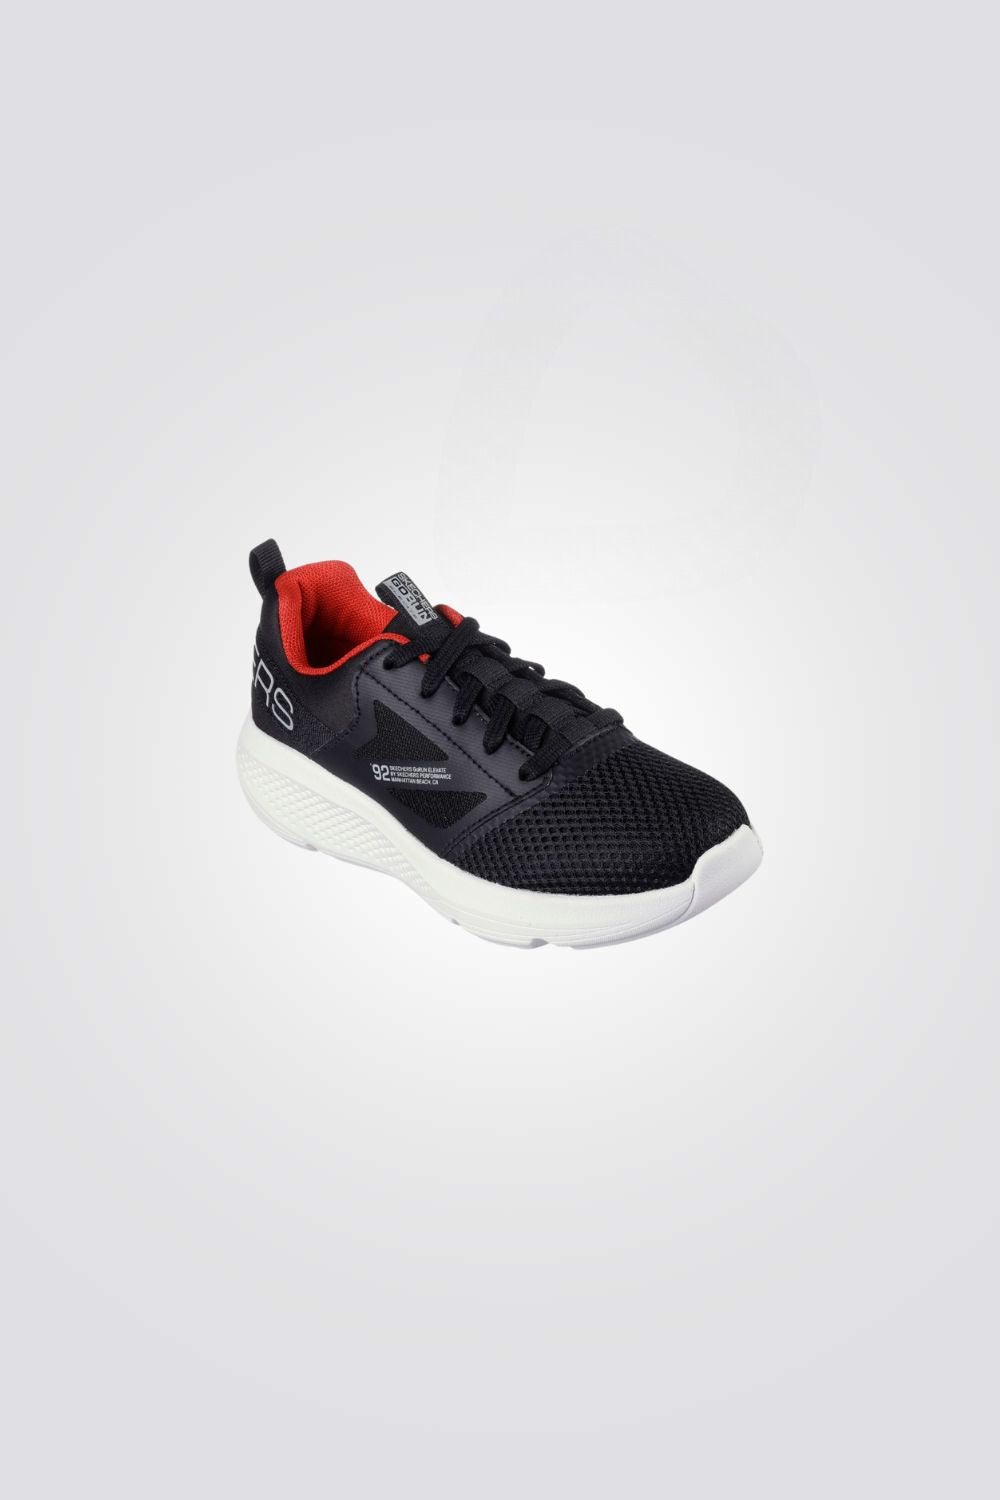 נעלי ספורט לנערים GOrun Elevate - Cipher בצבע שחור ואדום